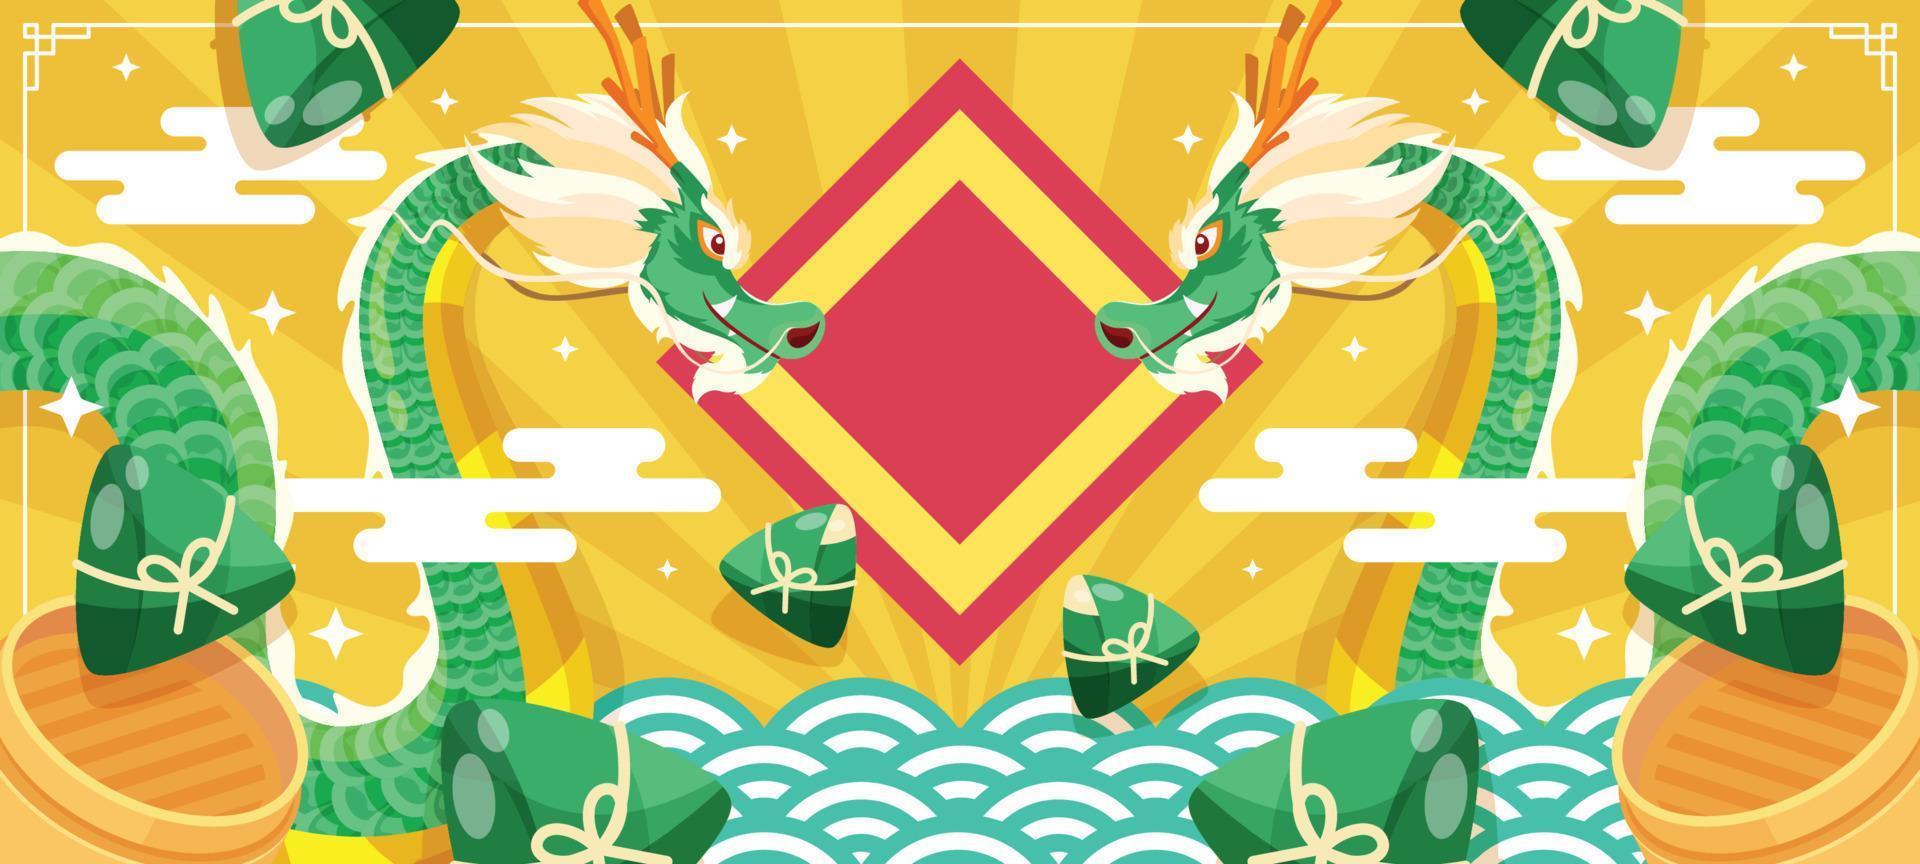 sfondo del festival della barca del drago vettore